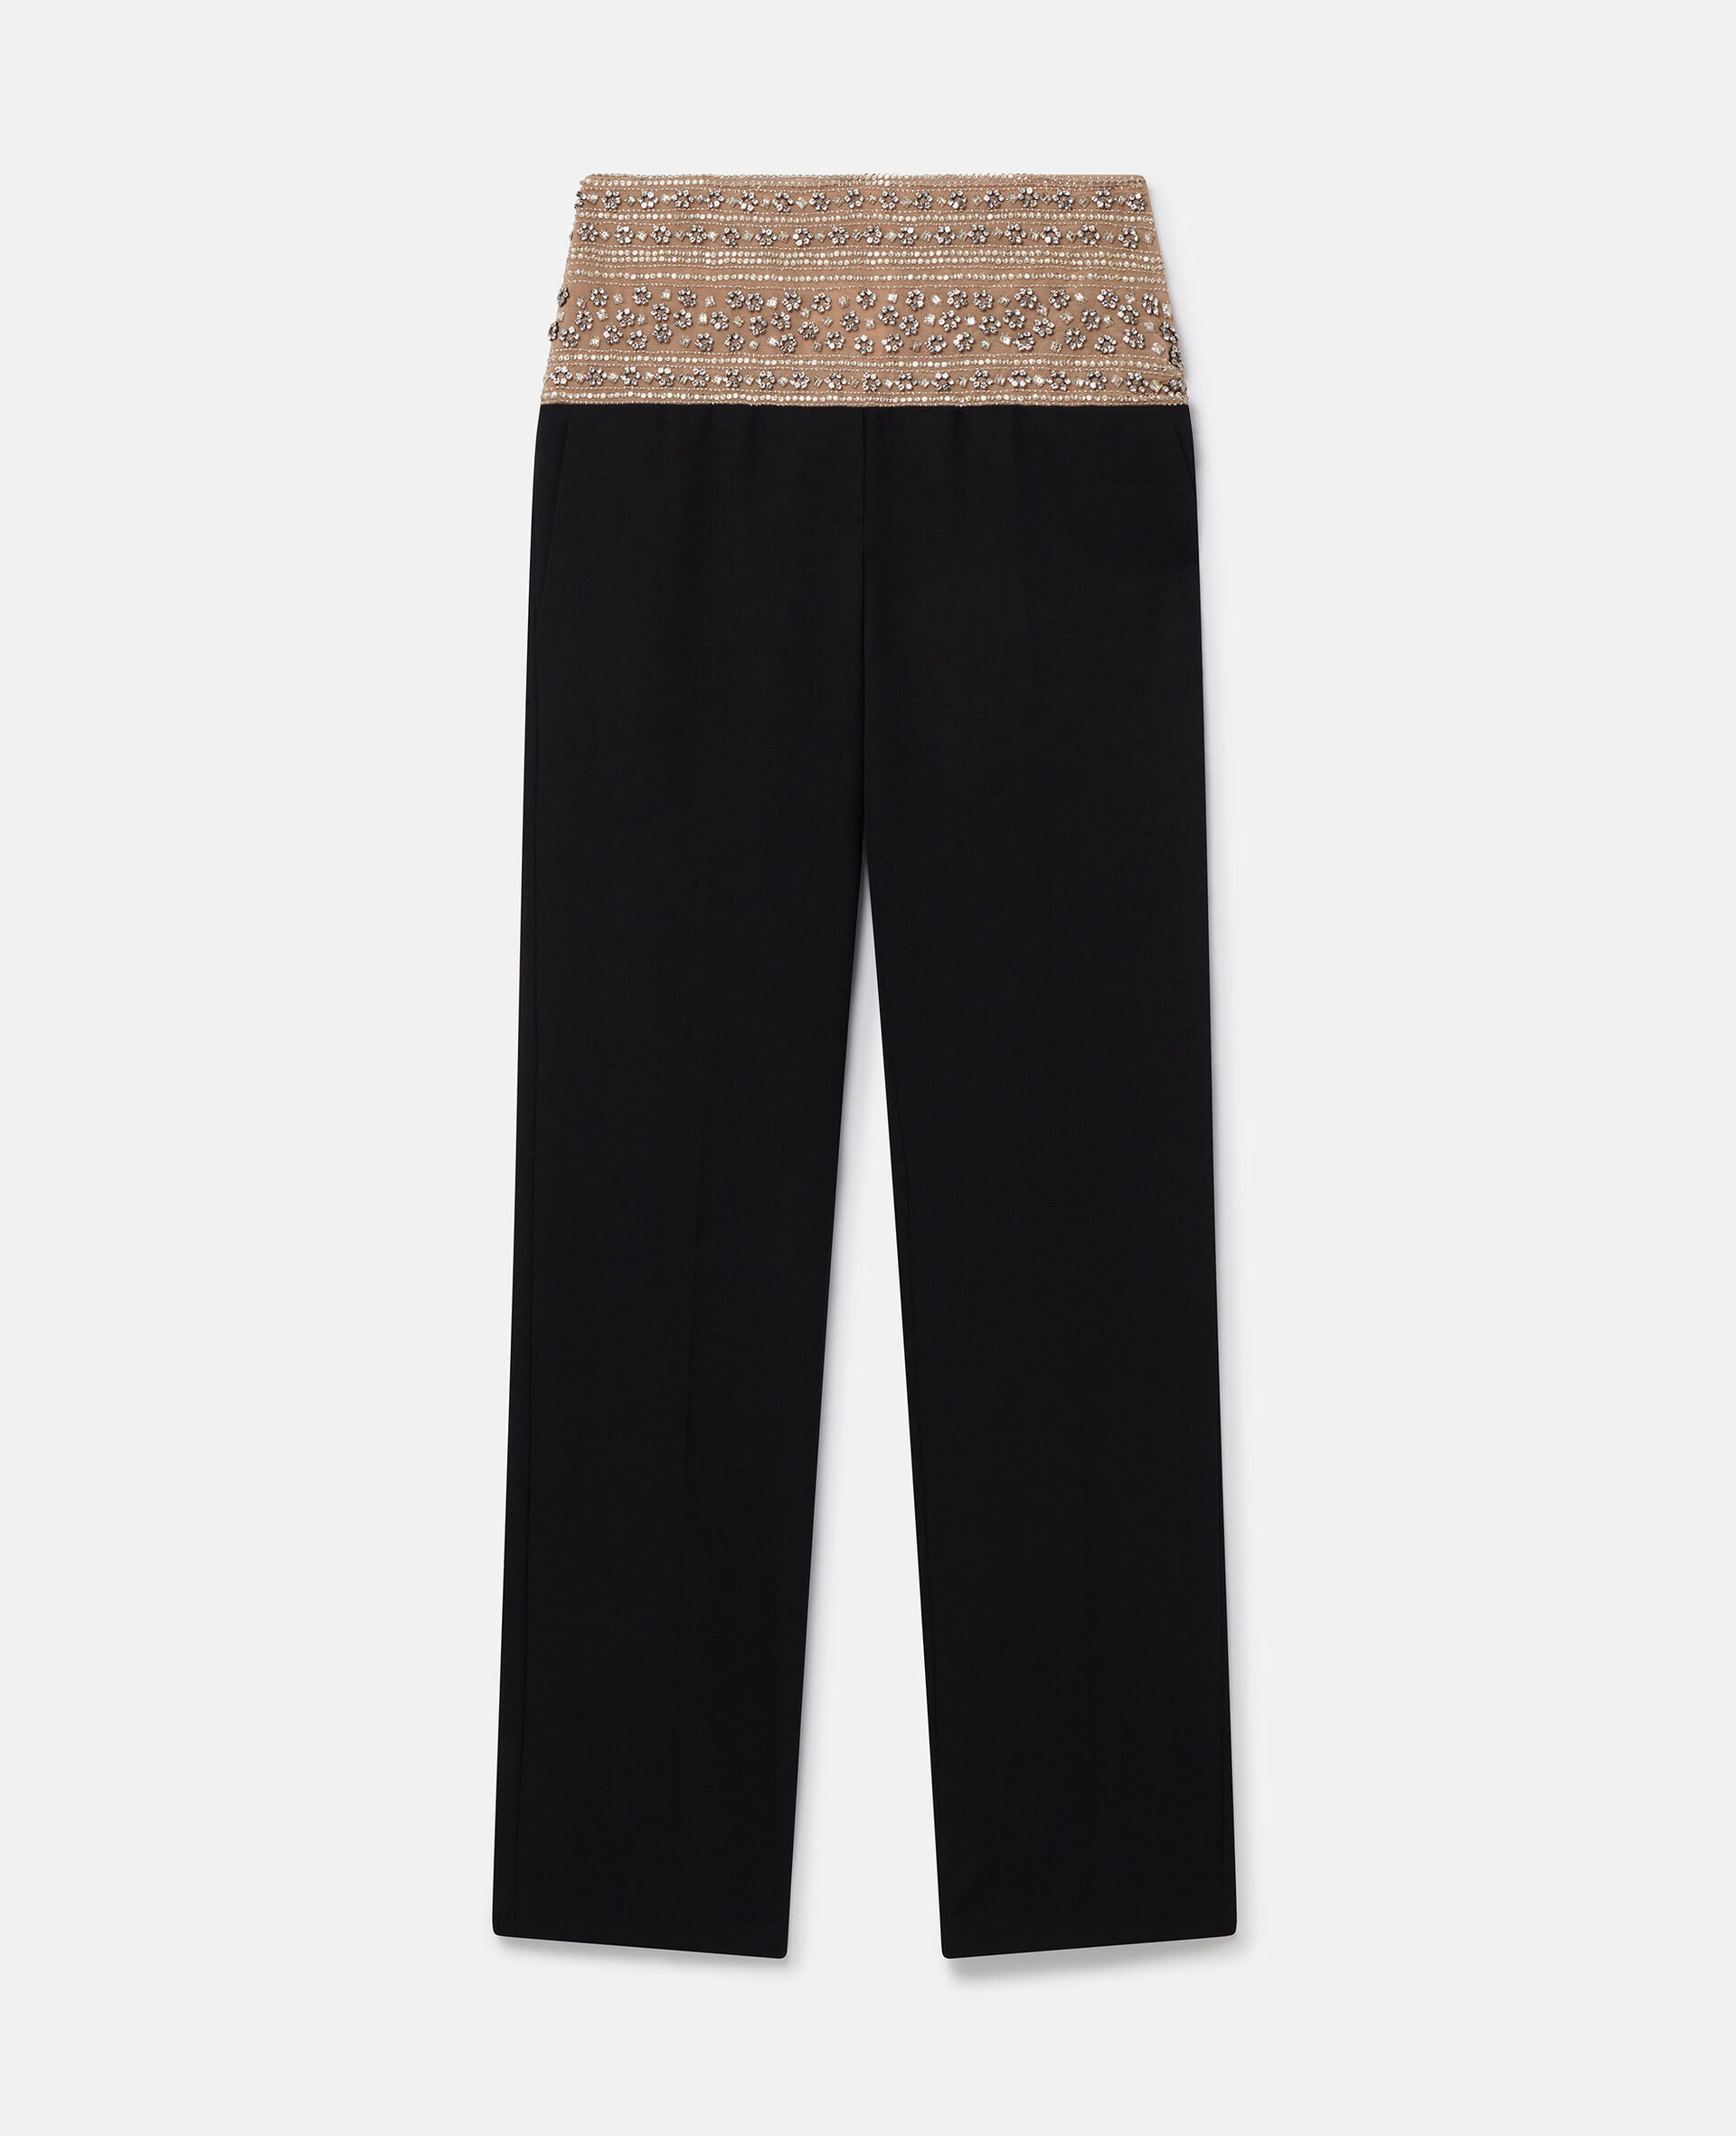 Pantalon en laine à cristaux-Noir-medium